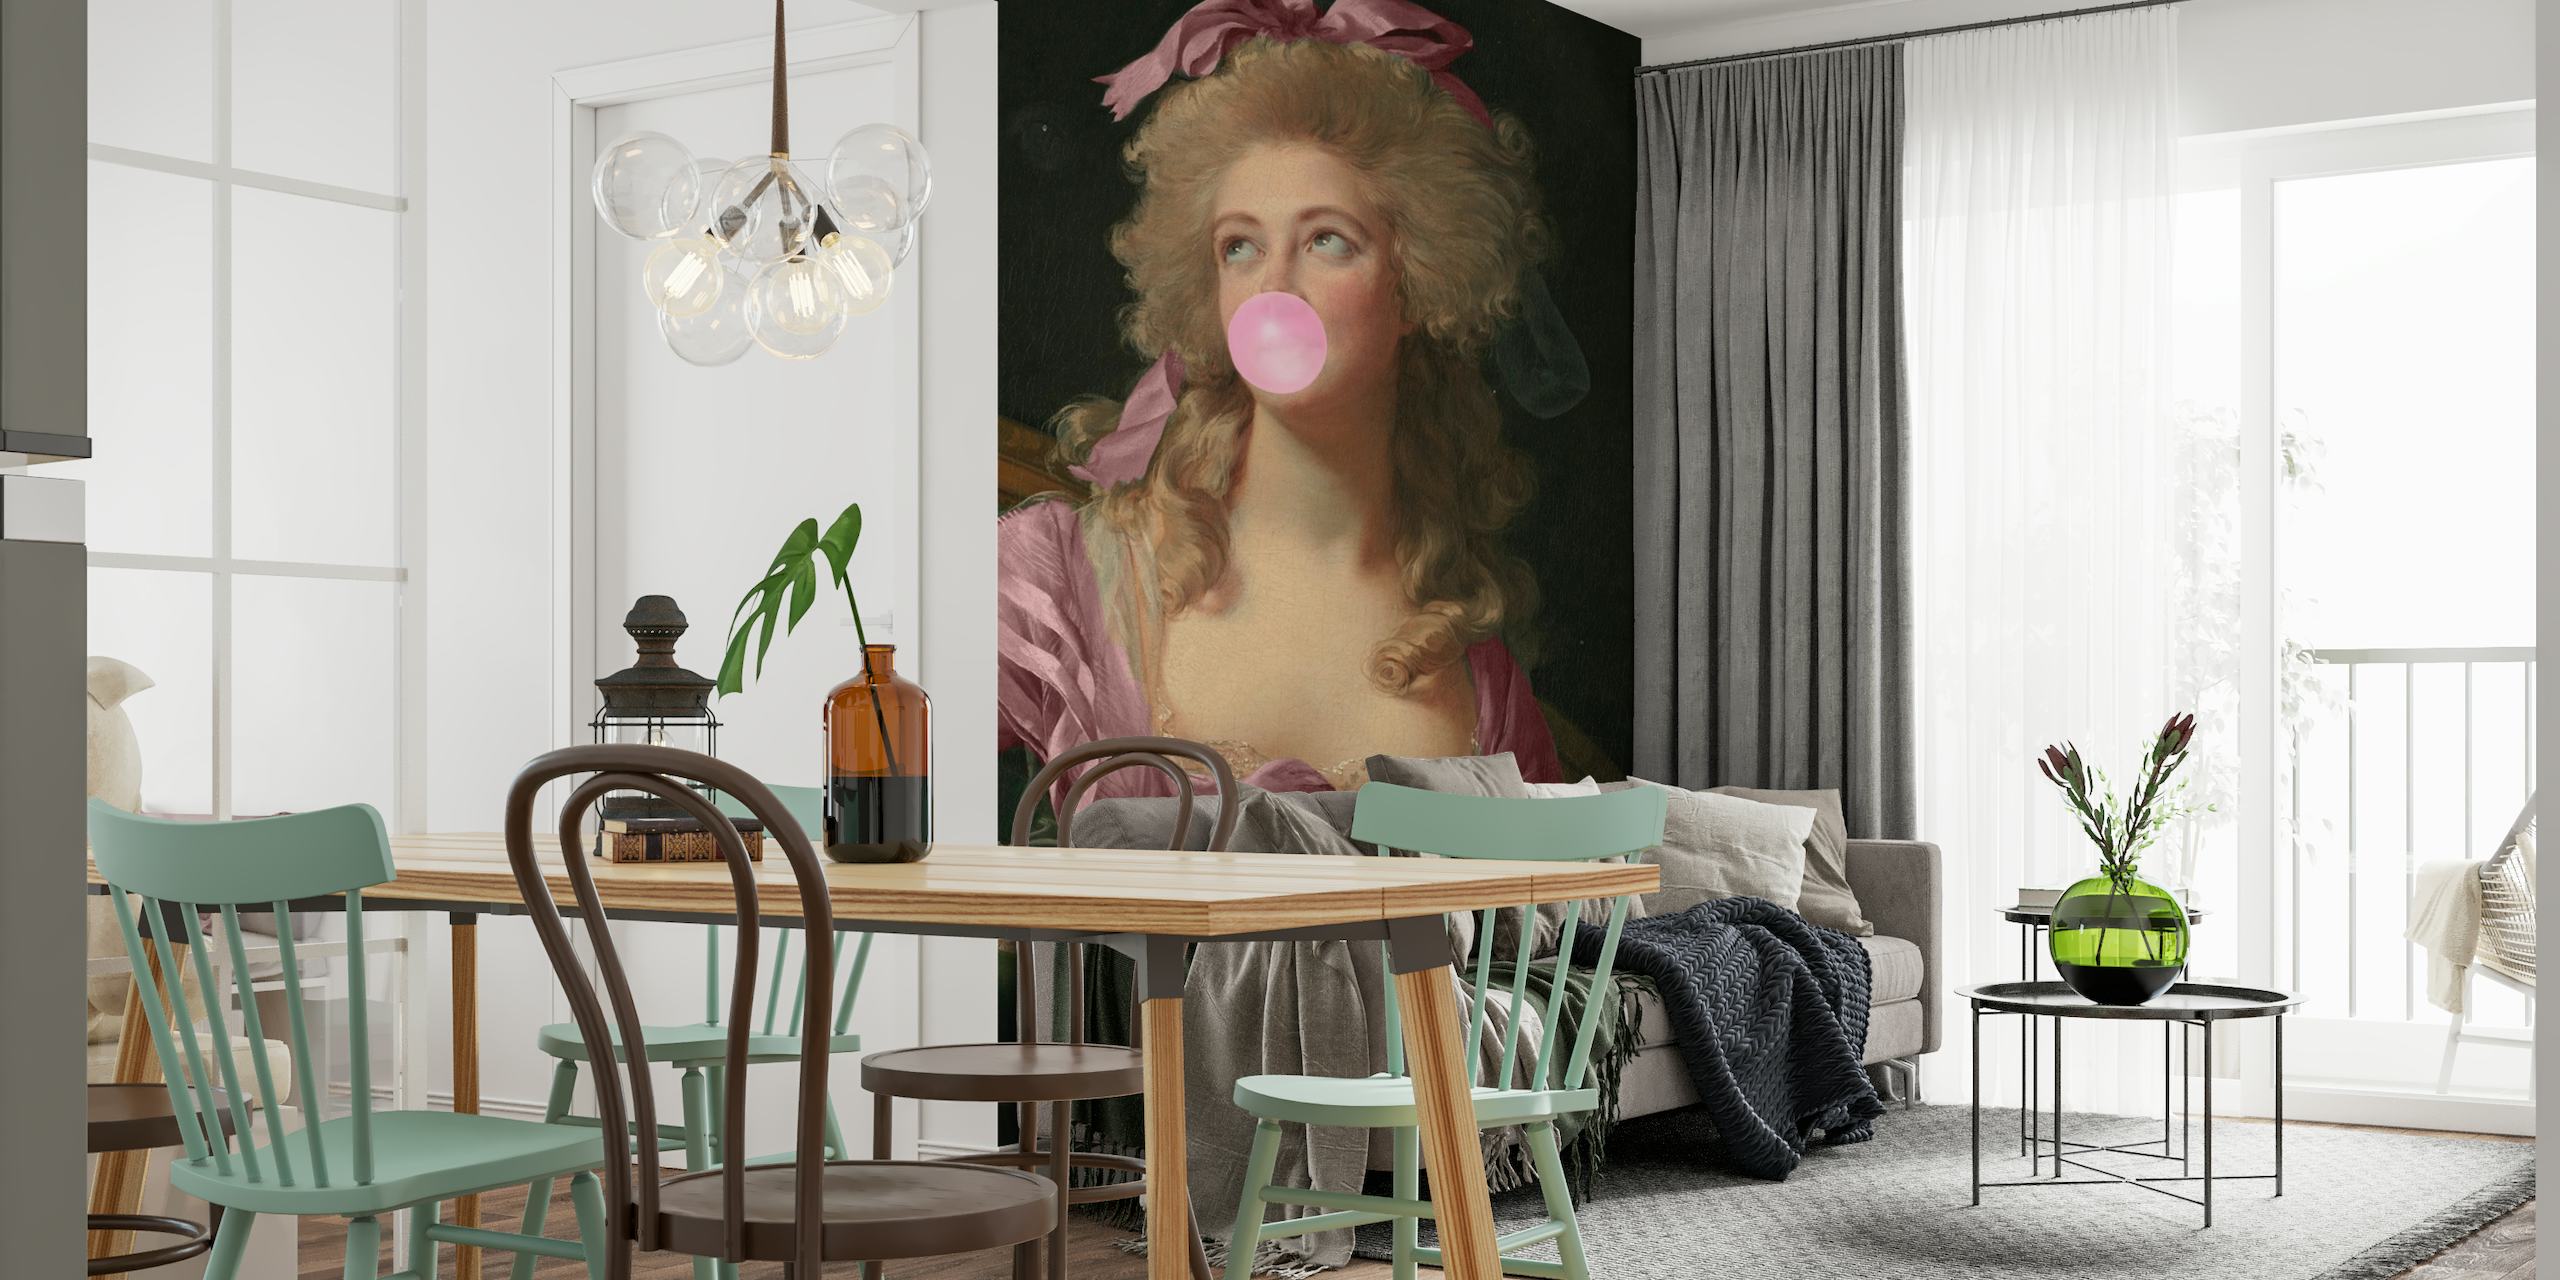 Un portrait élégant et classique d'une femme avec un noeud rose soufflant un bubble-gum